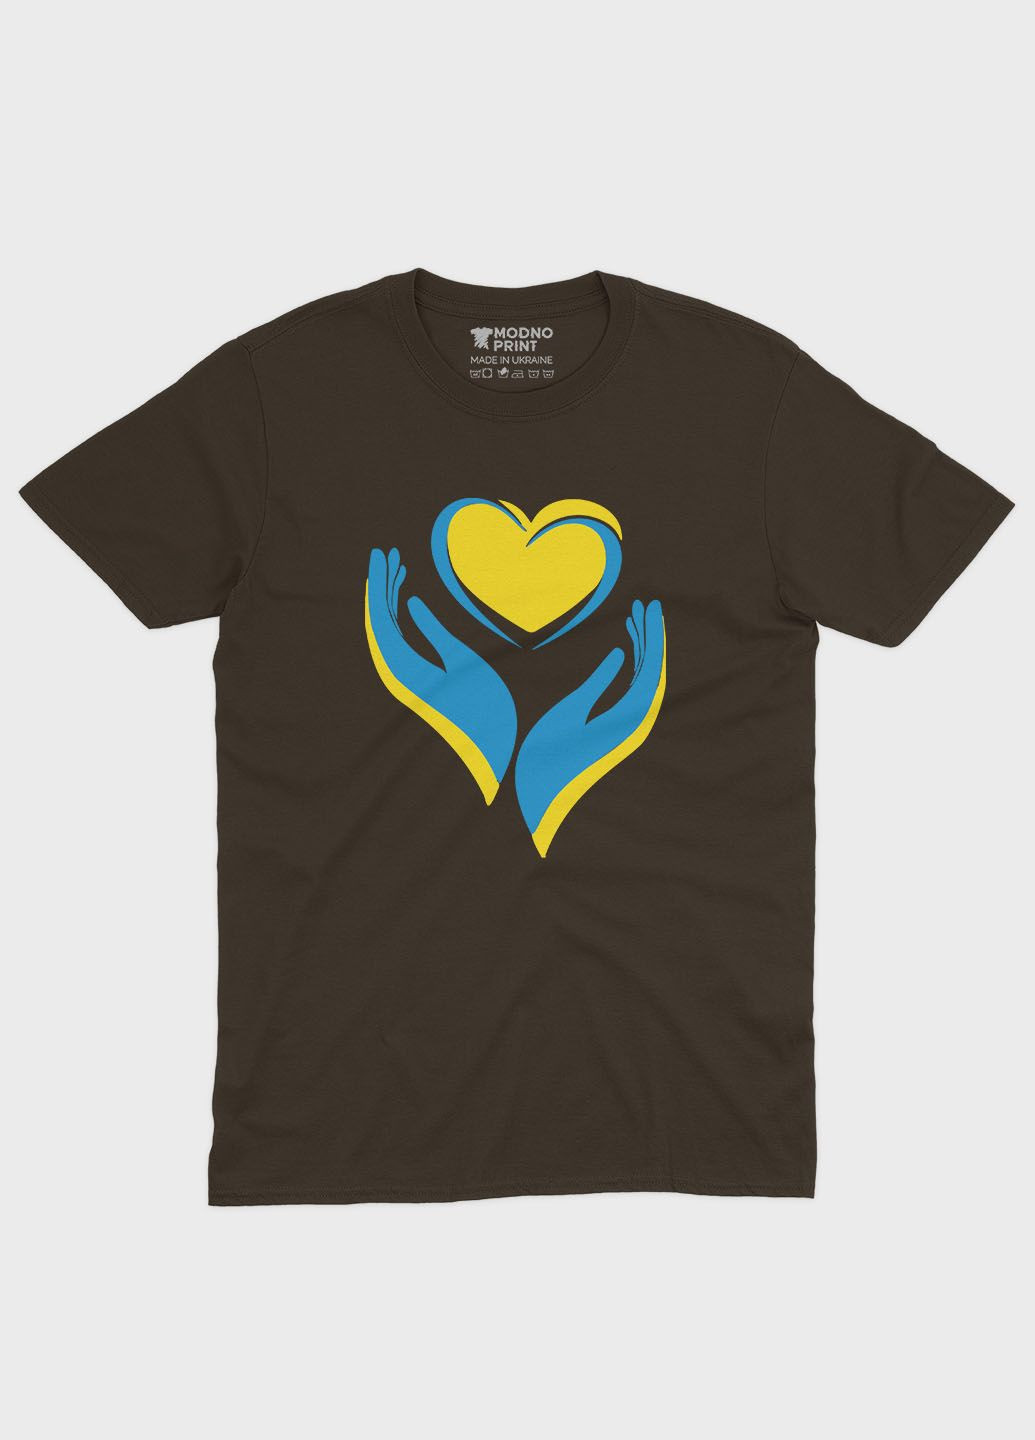 Коричневая мужская футболка с патриотическим принтом сердце и лодони (ts001-2-dch-005-1-029) Modno